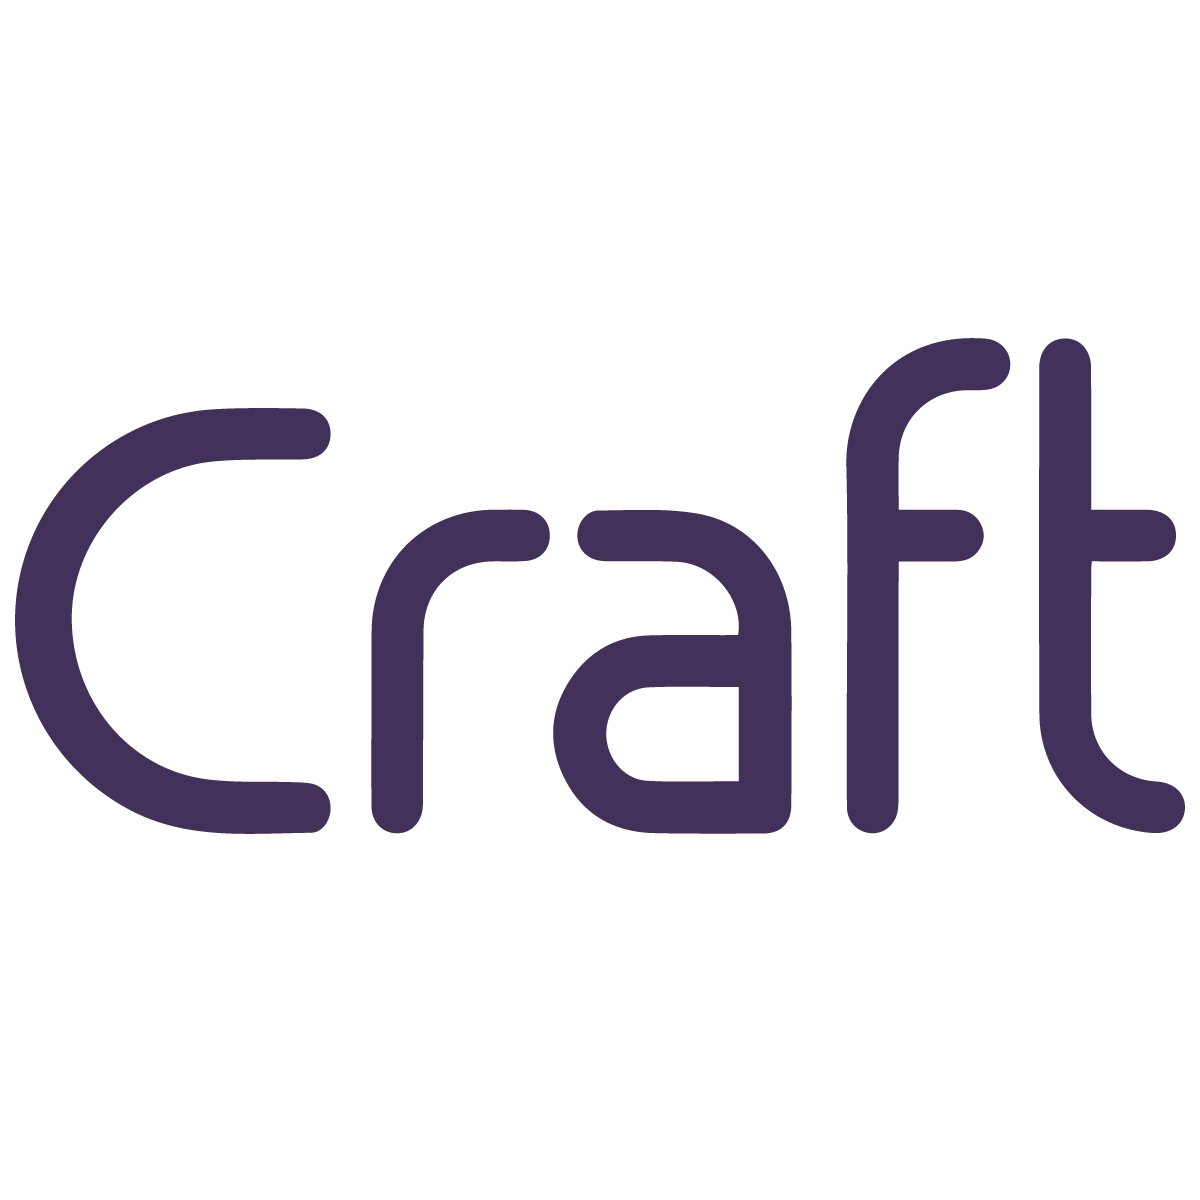 Craft.co